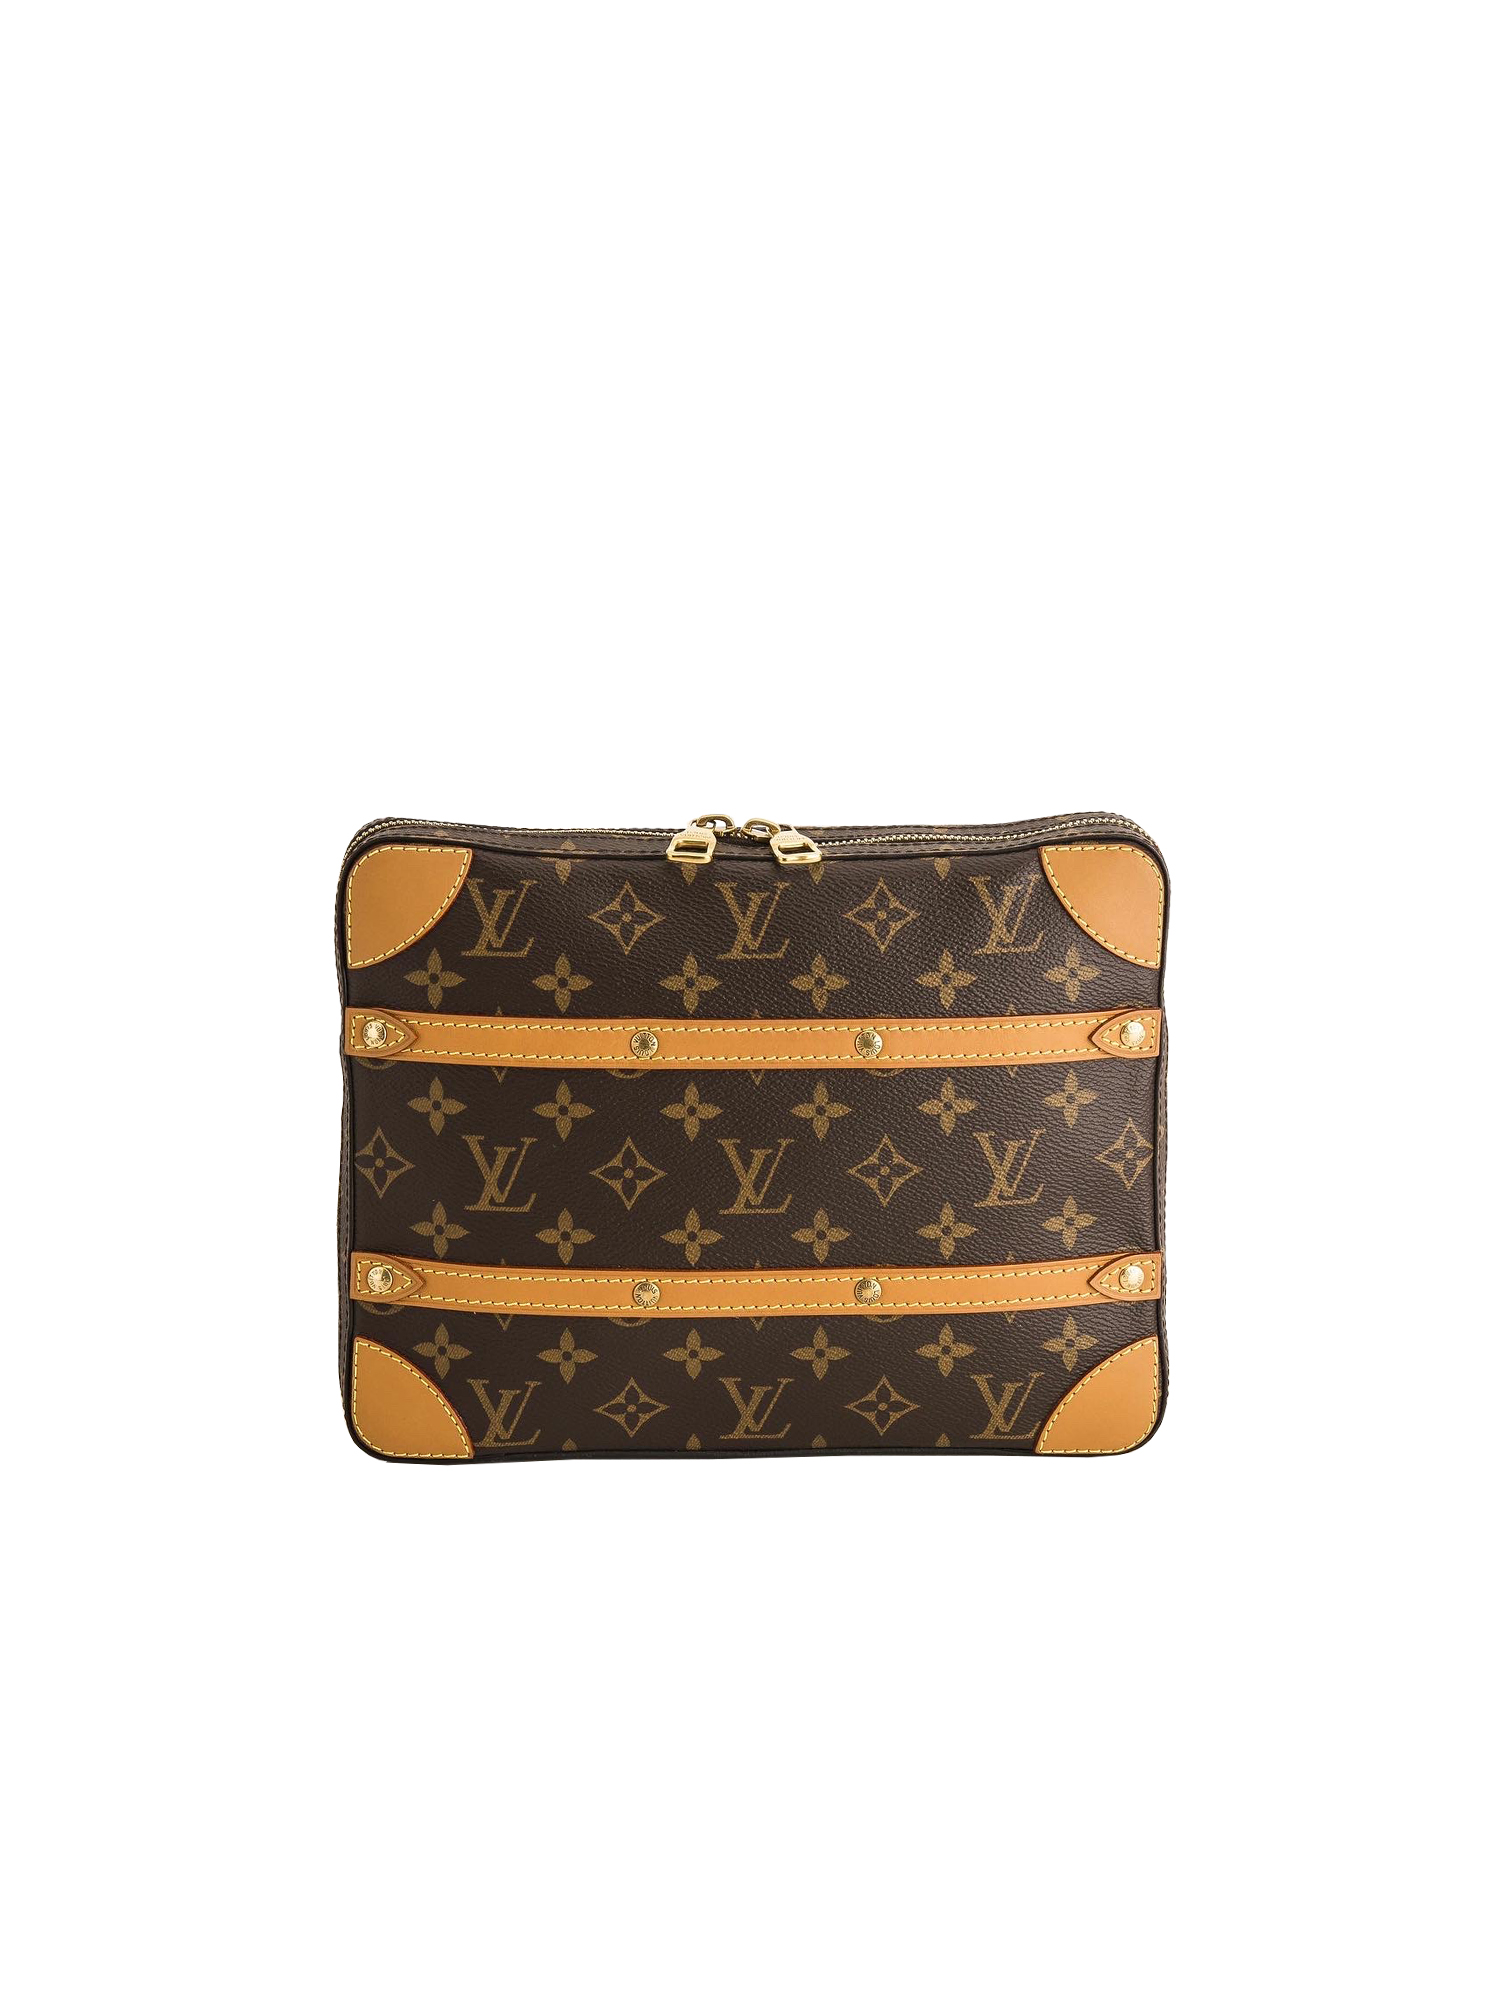  Louis Vuitton Bag M68494 LOUIS VUITTON Monogram Legacy LV  Men's Messenger Bag Clutch Soft Trunk Messenger PM [Parallel Import], Braun  : Clothing, Shoes & Jewelry